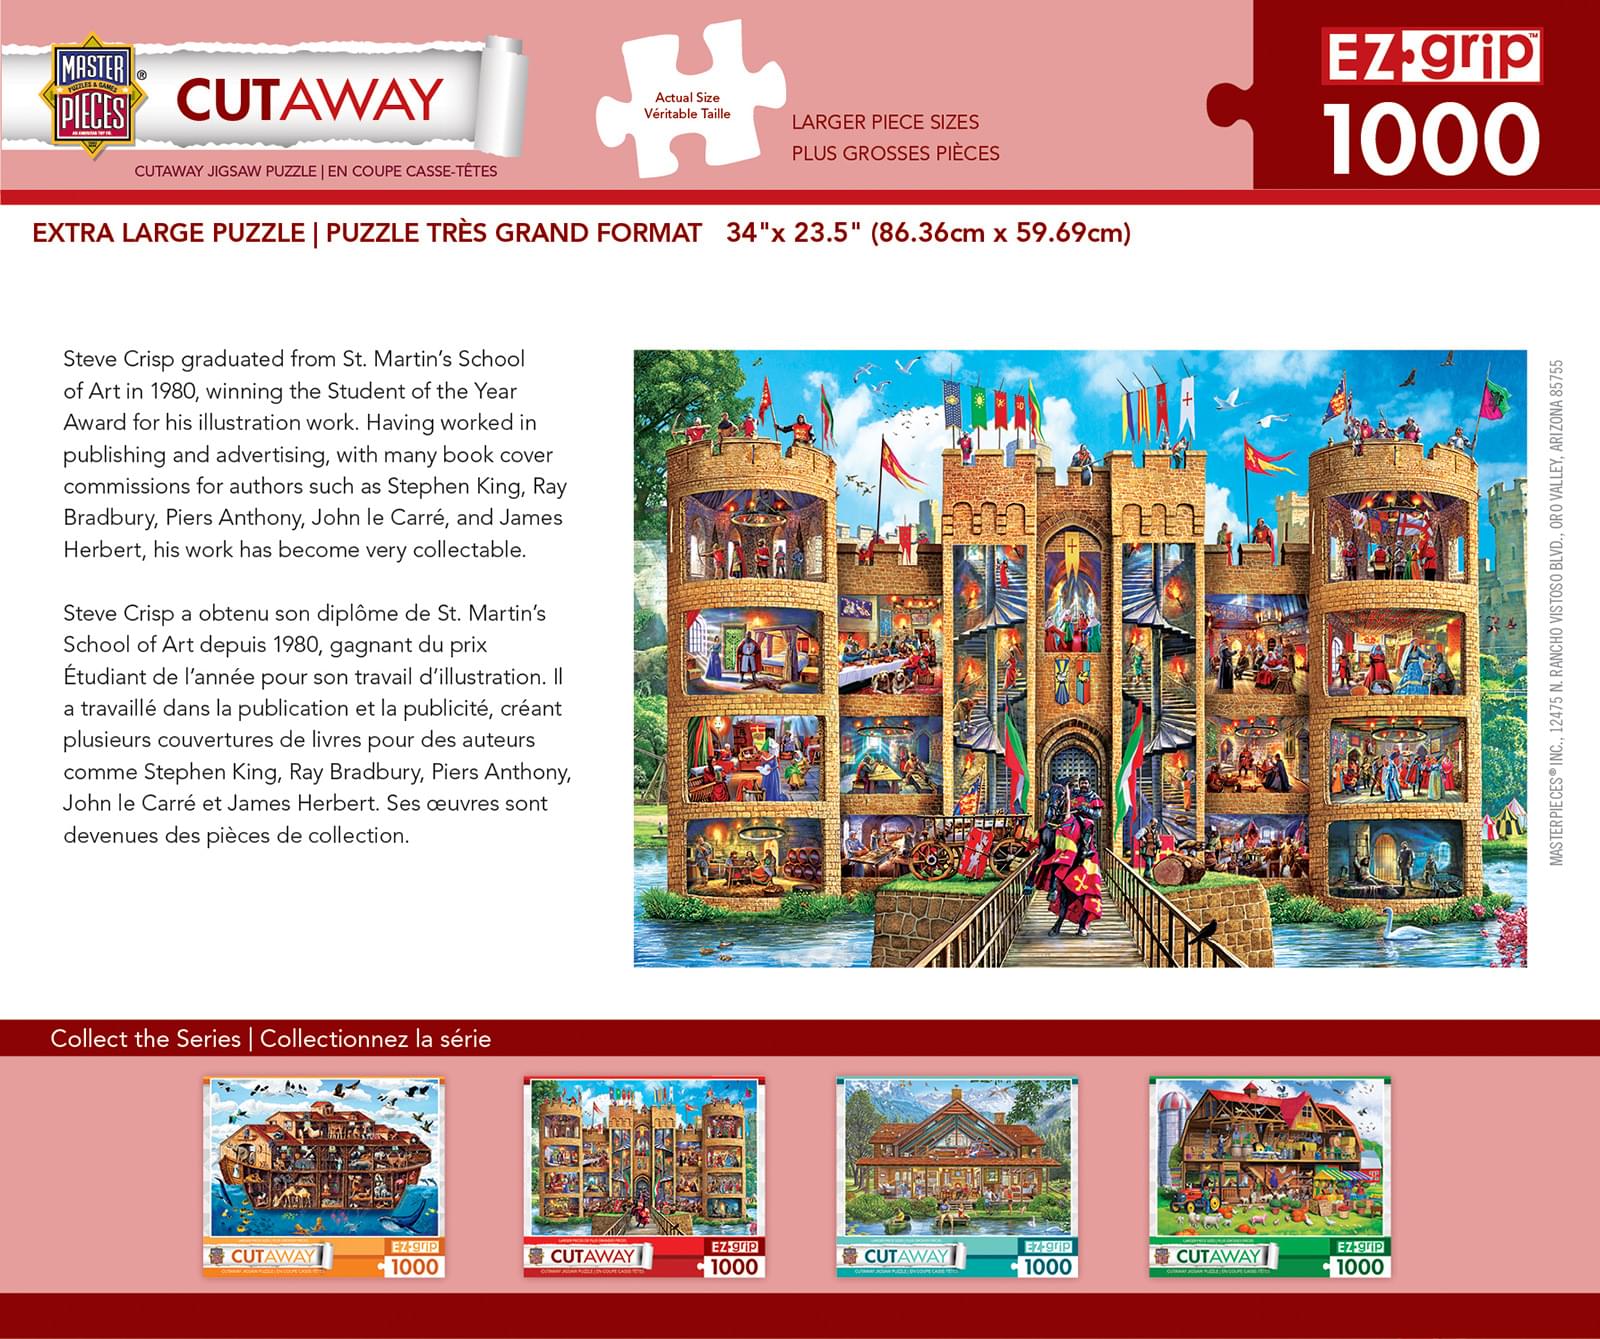 Cut-Aways Medieval Castle 1000 Piece Large EZ Grip Jigsaw Puzzle